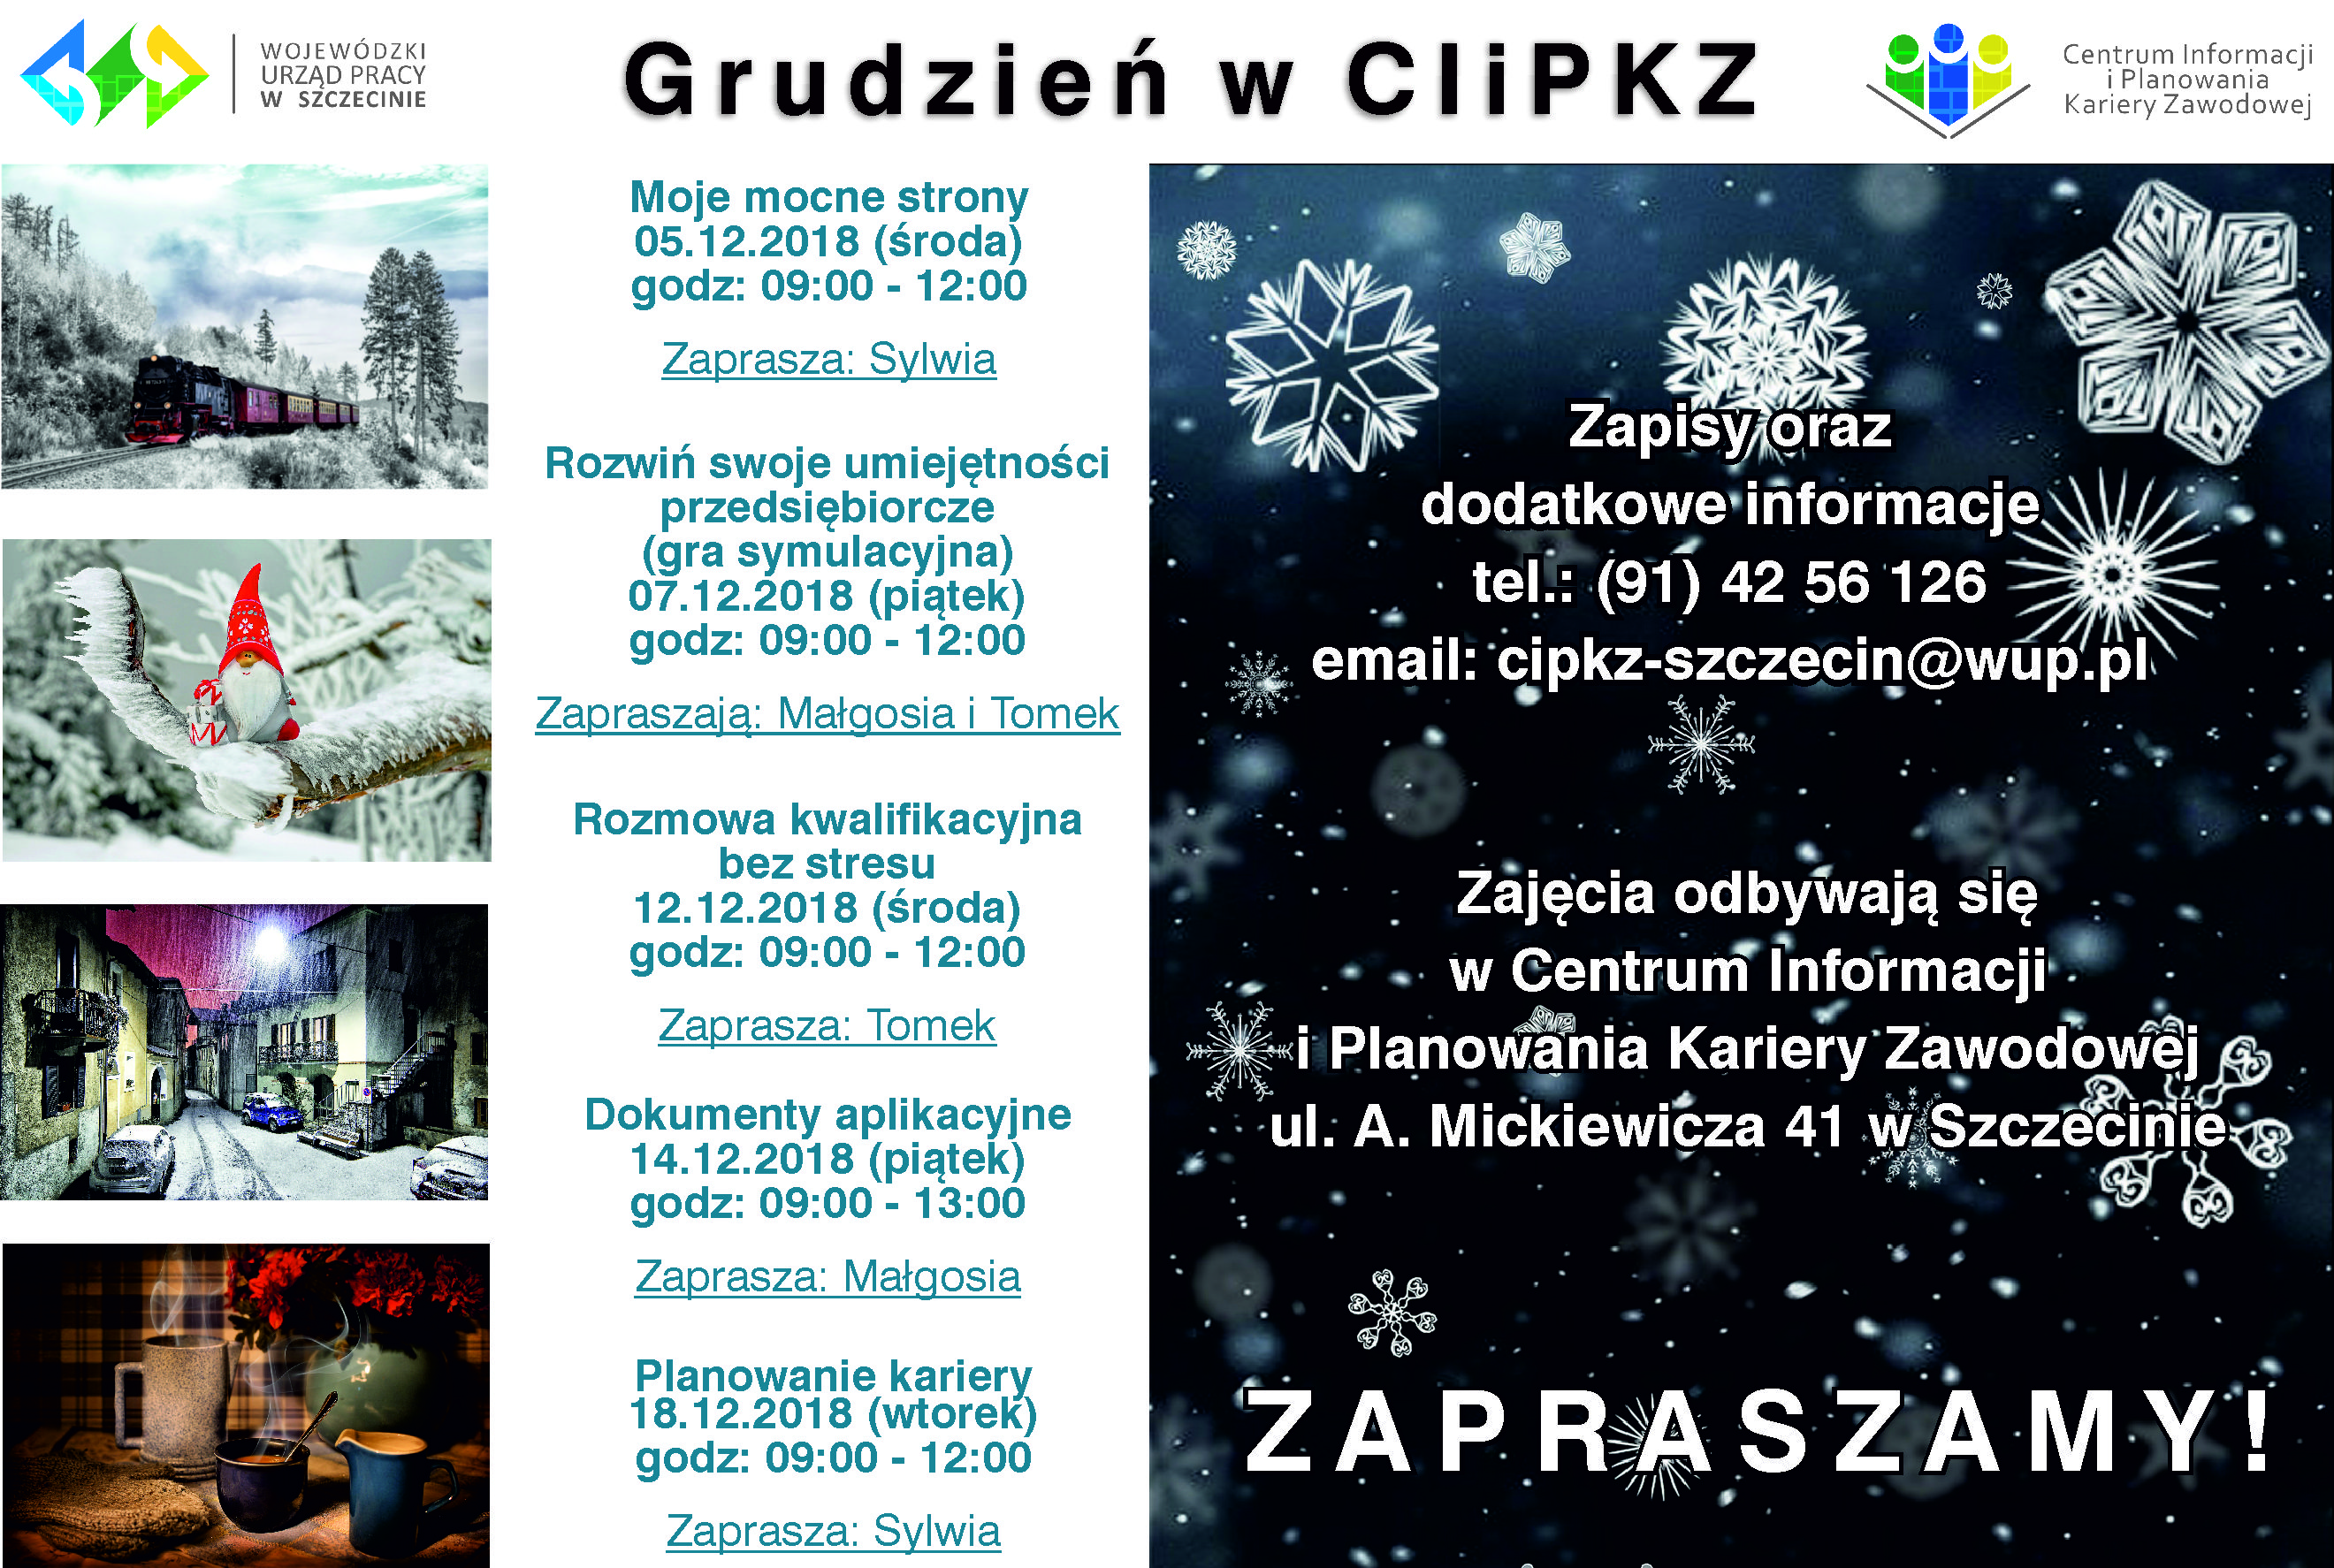 Plakat zawierający informacje na temat zajęć organizowanych w Centrum Informacji i Planowania Kariery Zawodowej w Szczecinie